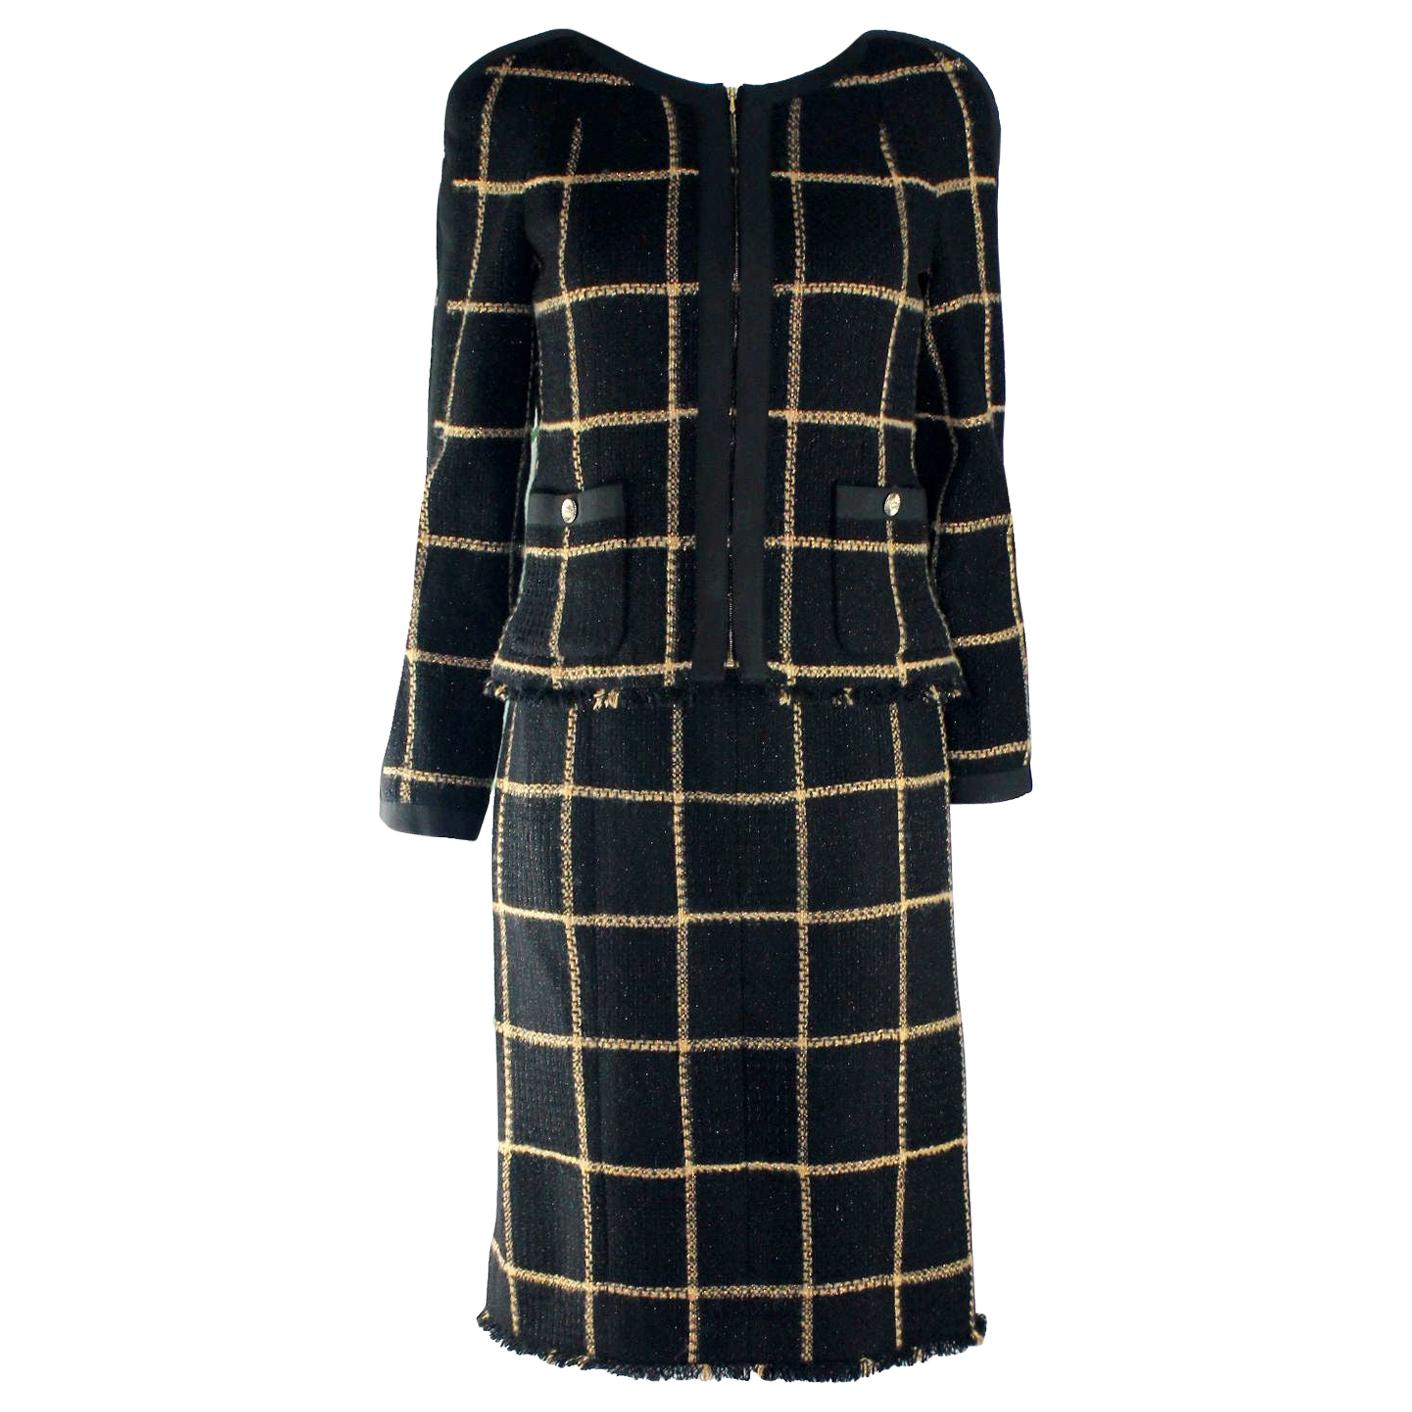 UNWORN Chanel Metallic Fantasy Tweed Sequin Trim Jacket Blazer